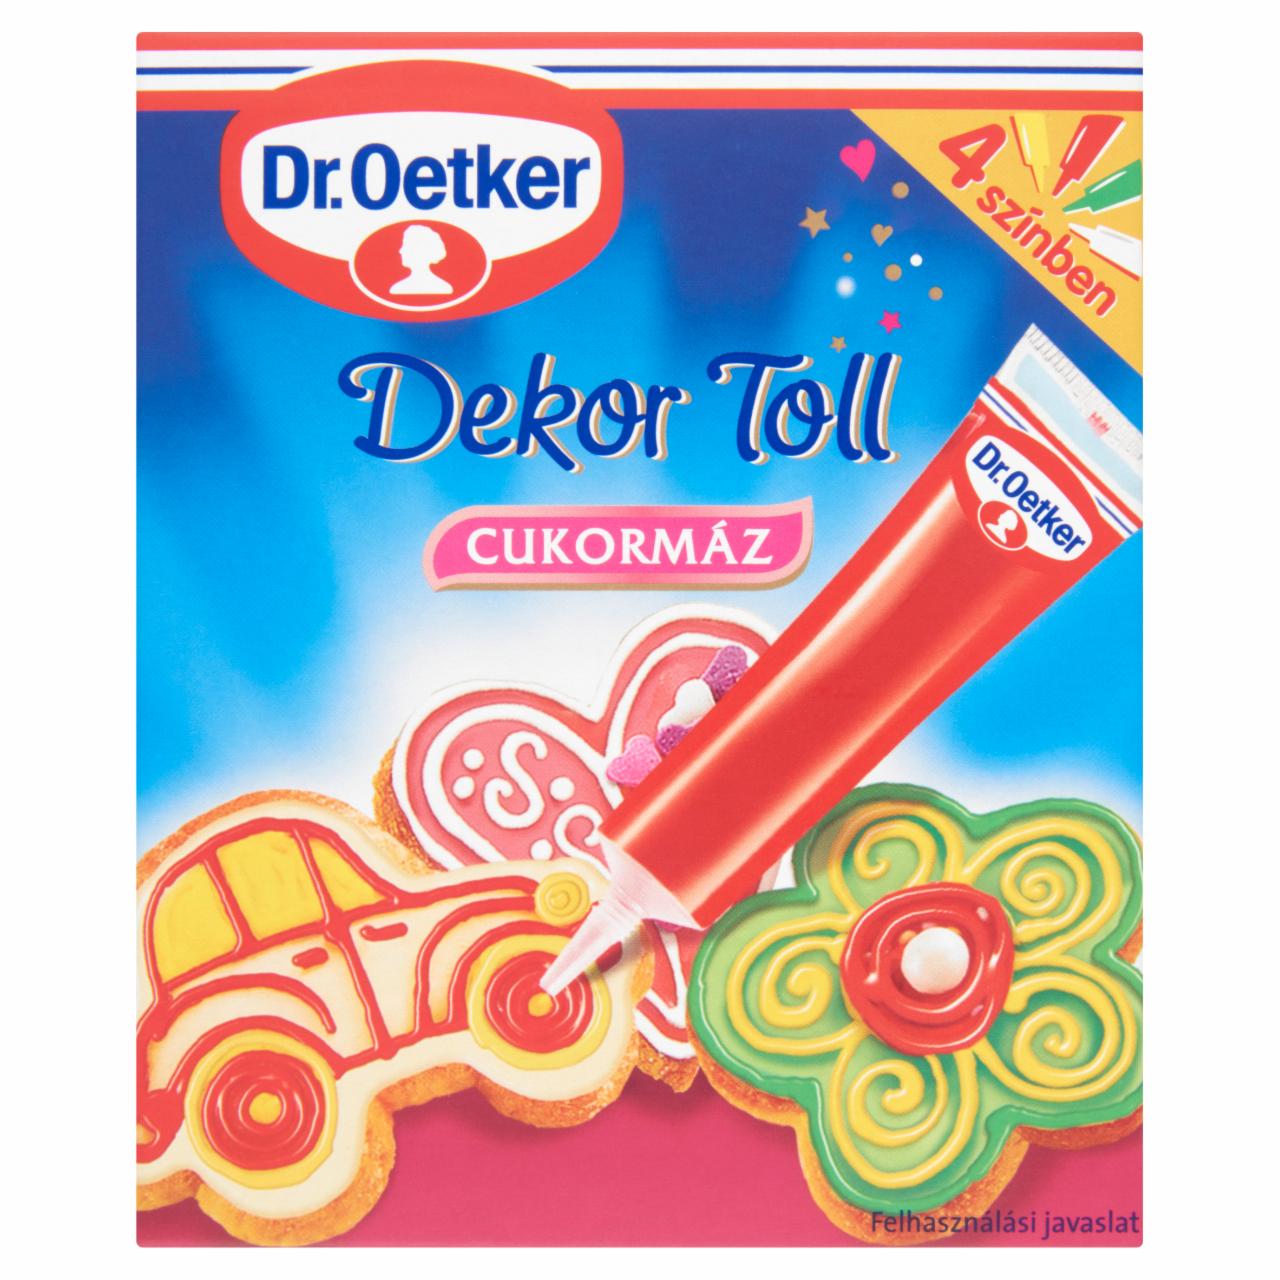 Képek - Dr. Oetker Dekor Toll cukormáz 4 színben 4 db 76 g